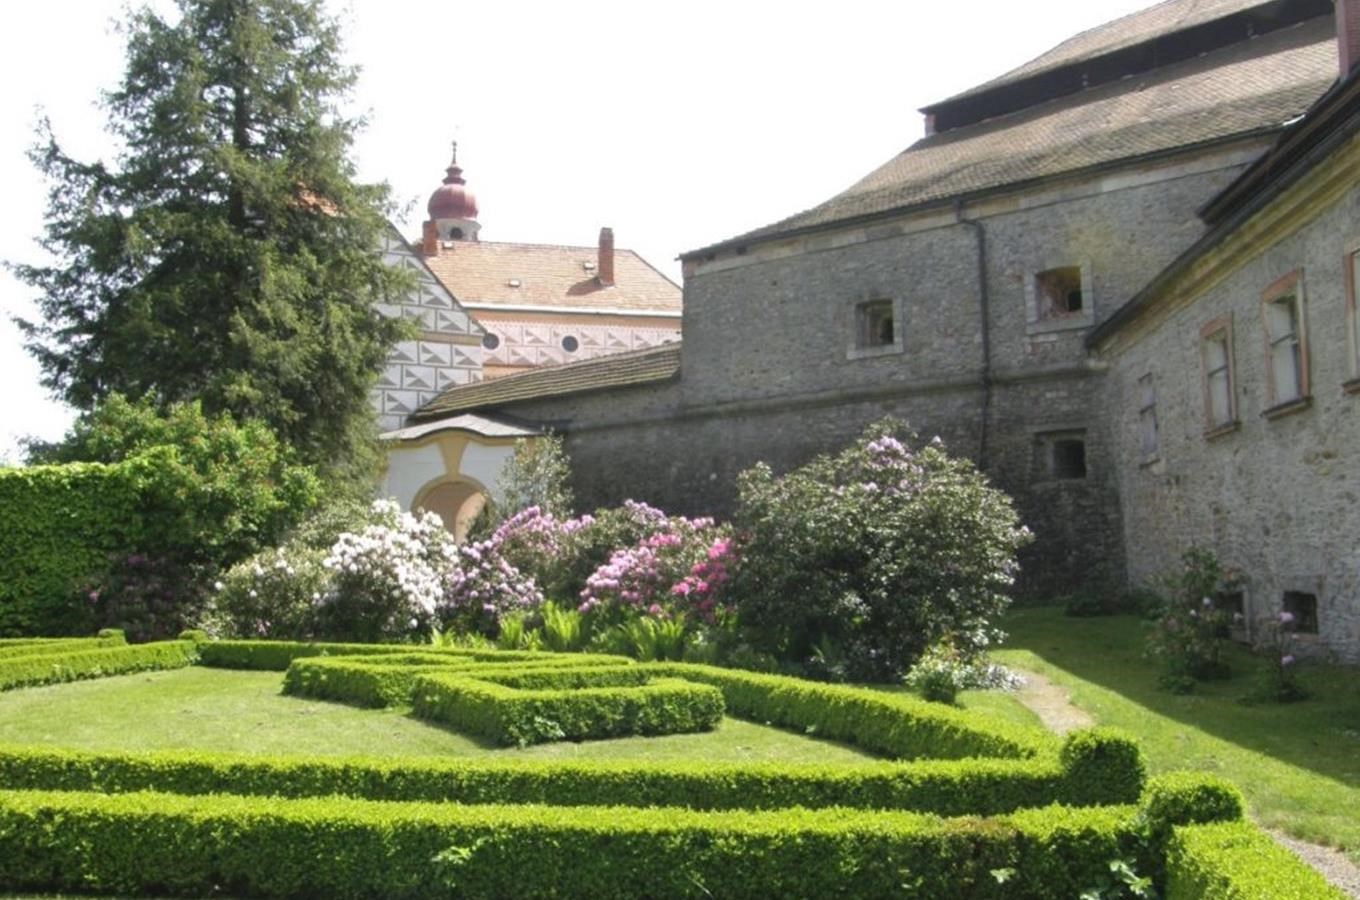 Piccolominská zahrada na zámku Náchod